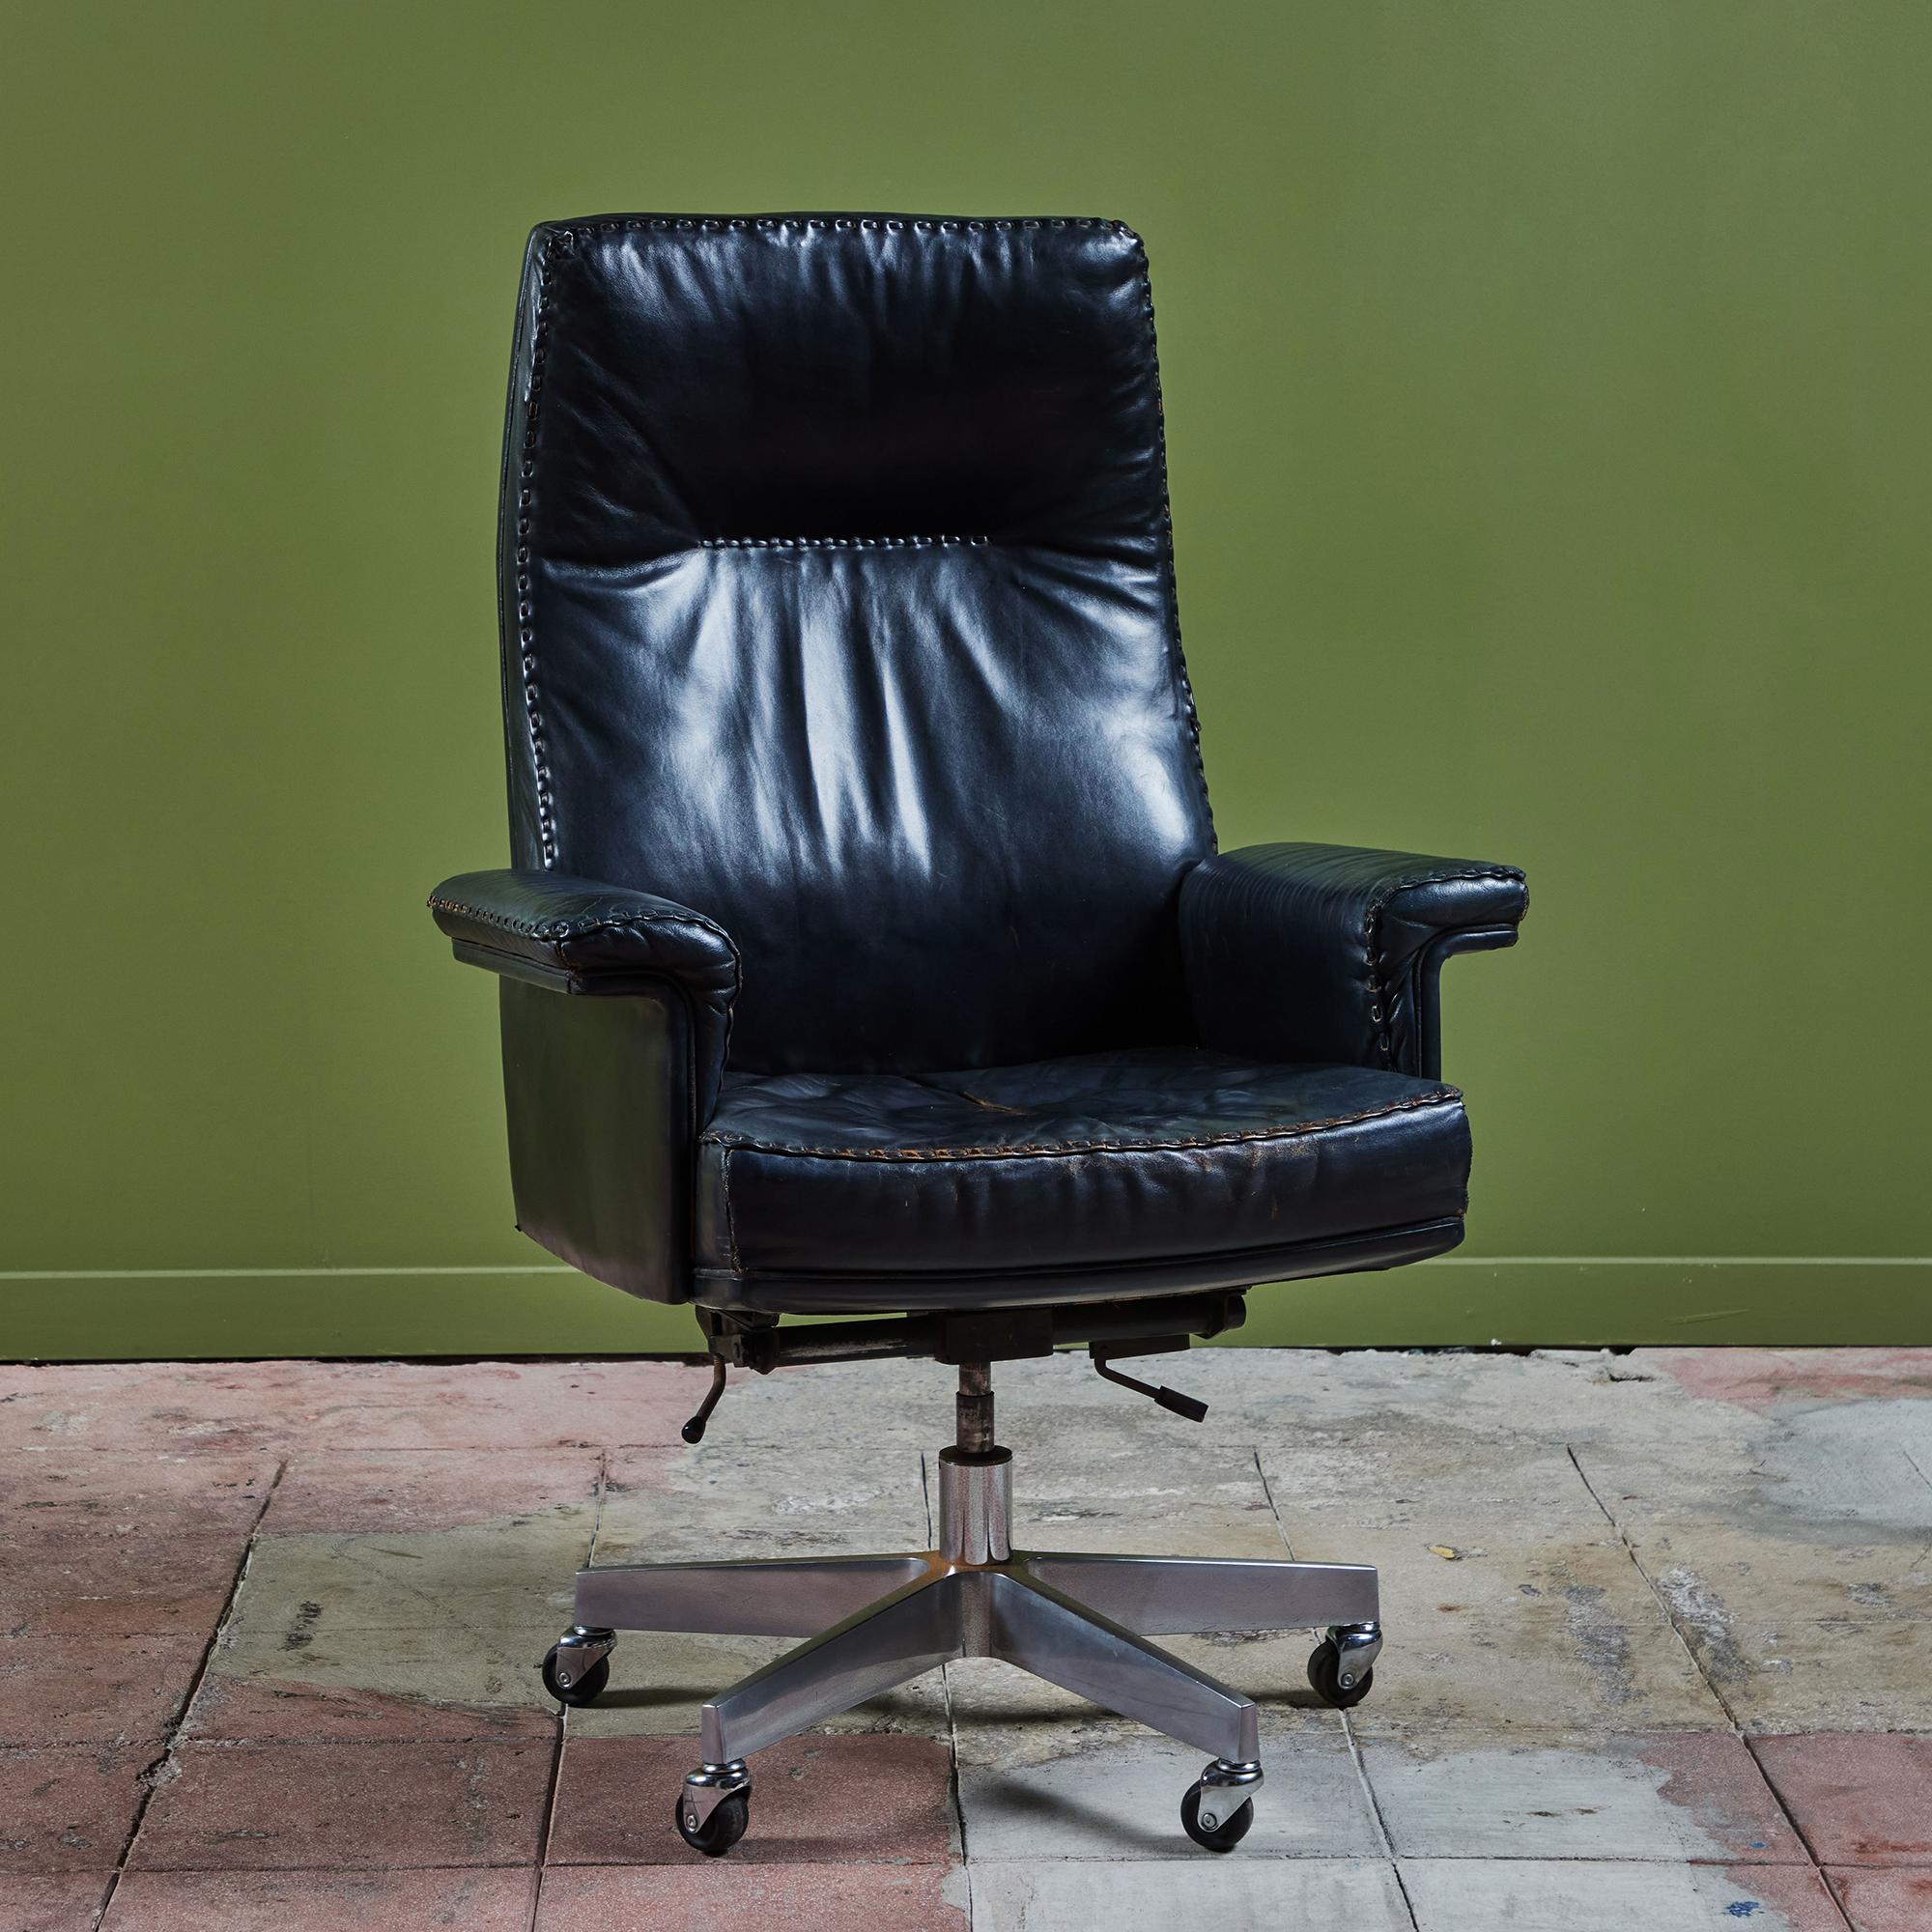 Fauteuil de bureau de De Sede c.C. années 1970. Cette chaise fabriquée en Suisse est dotée d'un revêtement en cuir noir d'origine et de magnifiques détails cousus à la main le long du bord. Le fauteuil est équipé d'un mécanisme d'inclinaison et de